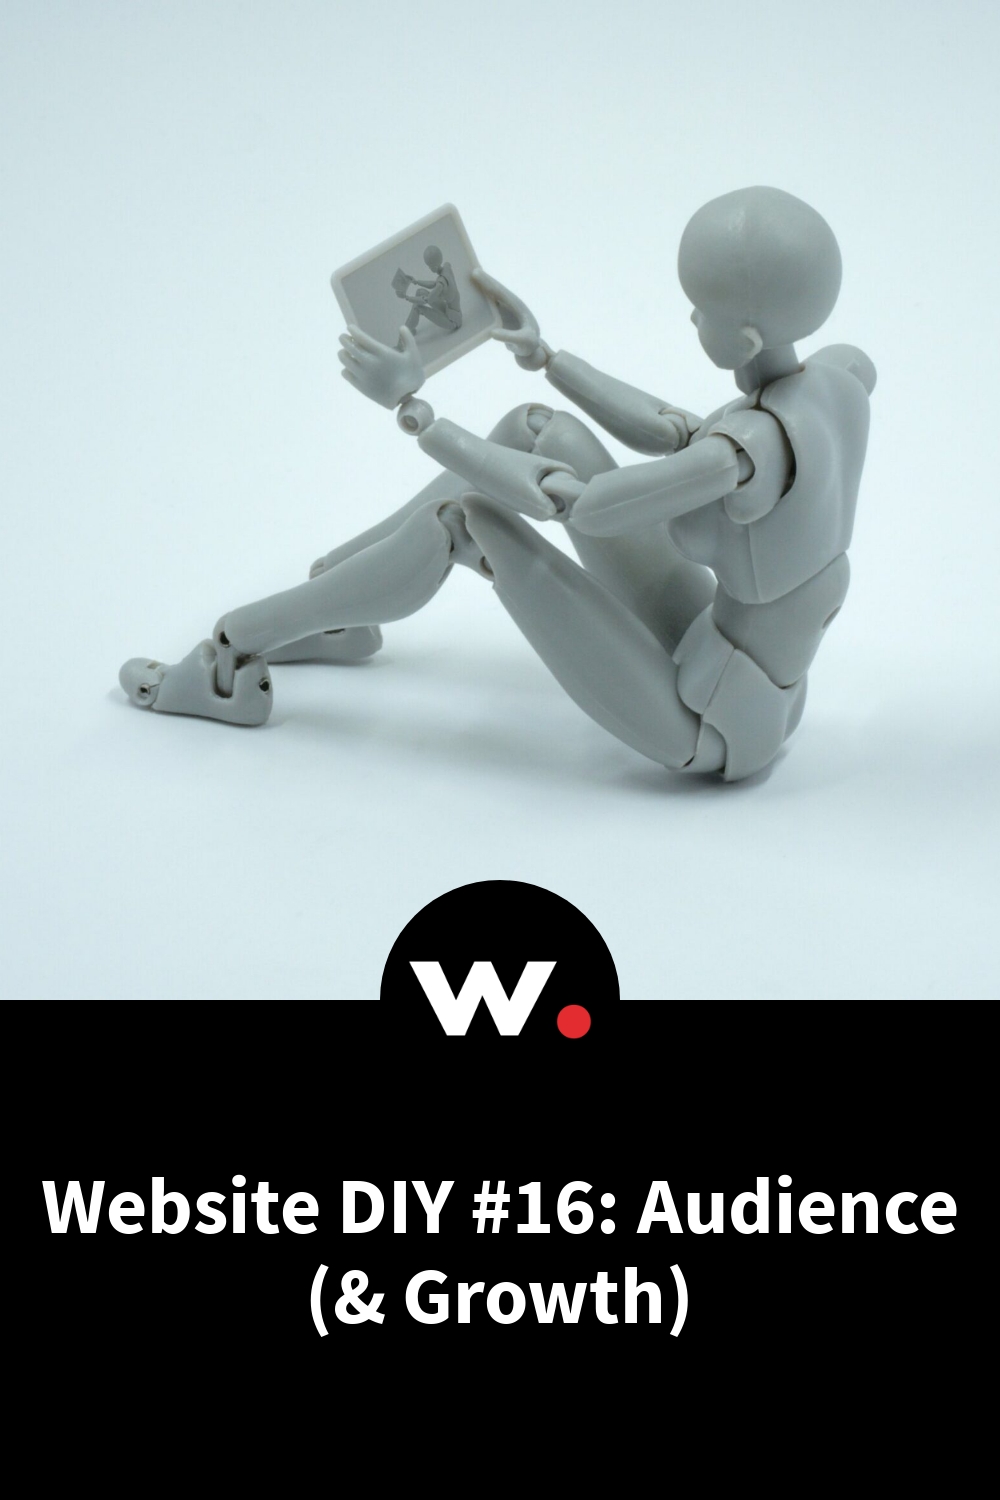 Website DIY #16: Audience (& Growth)